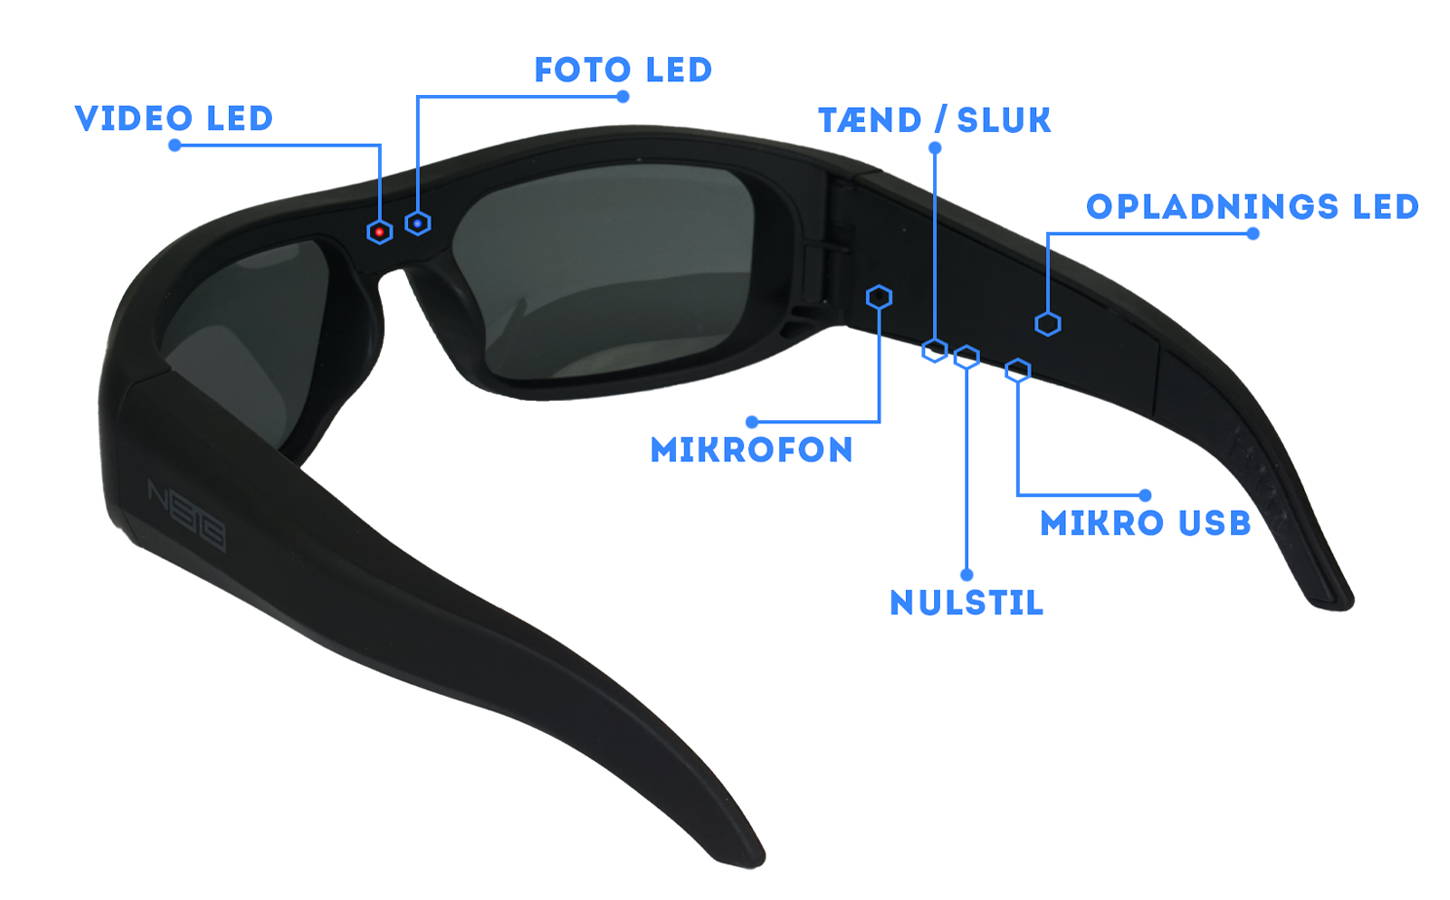 Instruktioner over Neptune vandtæt kamera solbrille: Tænd/sluk, LED's, Mikrofon, Mikro USB port, Nulstil